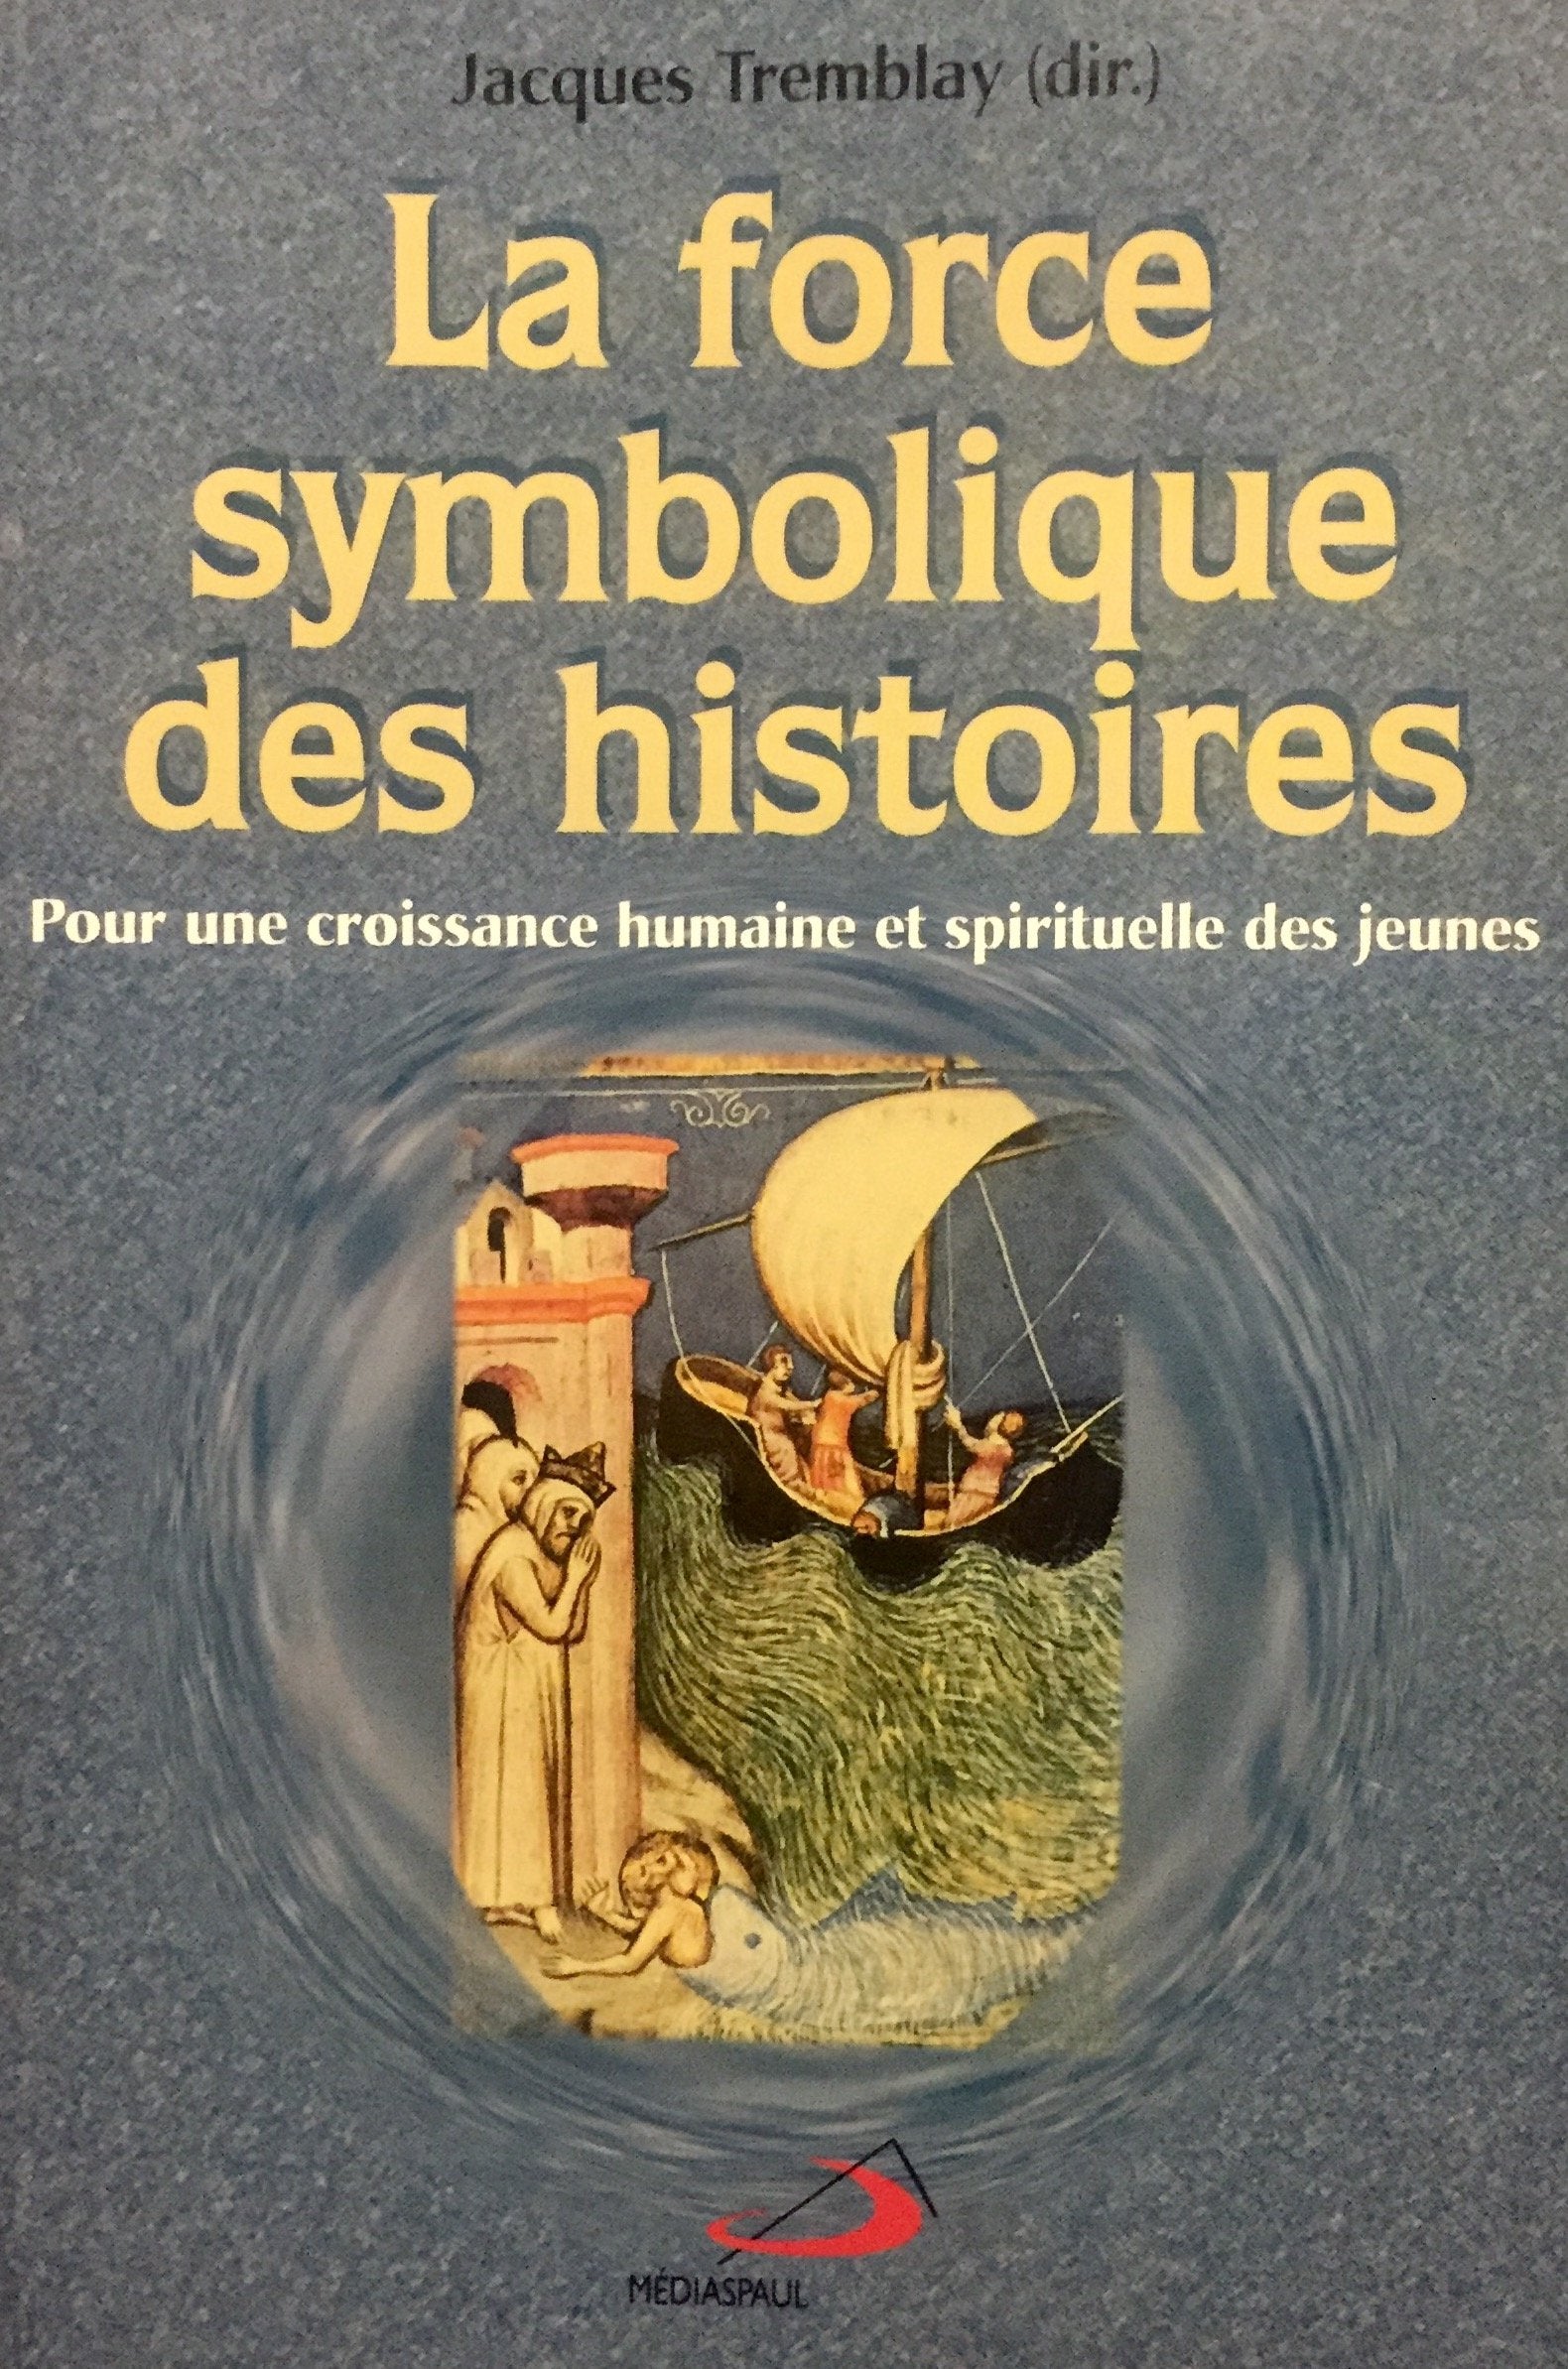 Livre ISBN 2894201370 La force symbolique des histoires : Pour une croissance humaine et spirituelle des jeunes. (Jacques Tremblay)